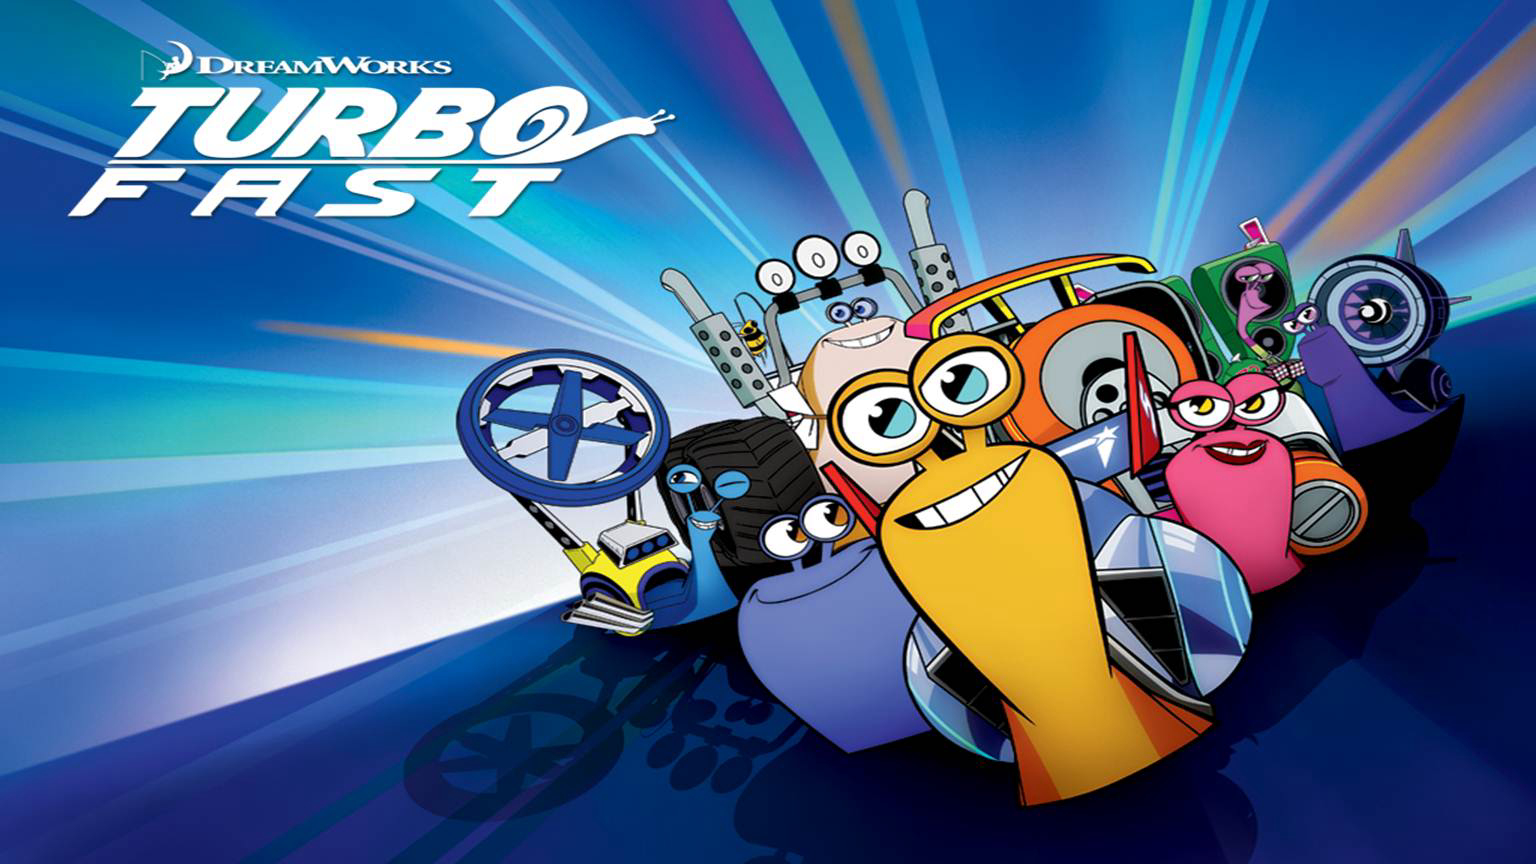 Turbo và Đội đua Siêu tốc - Turbo FAST